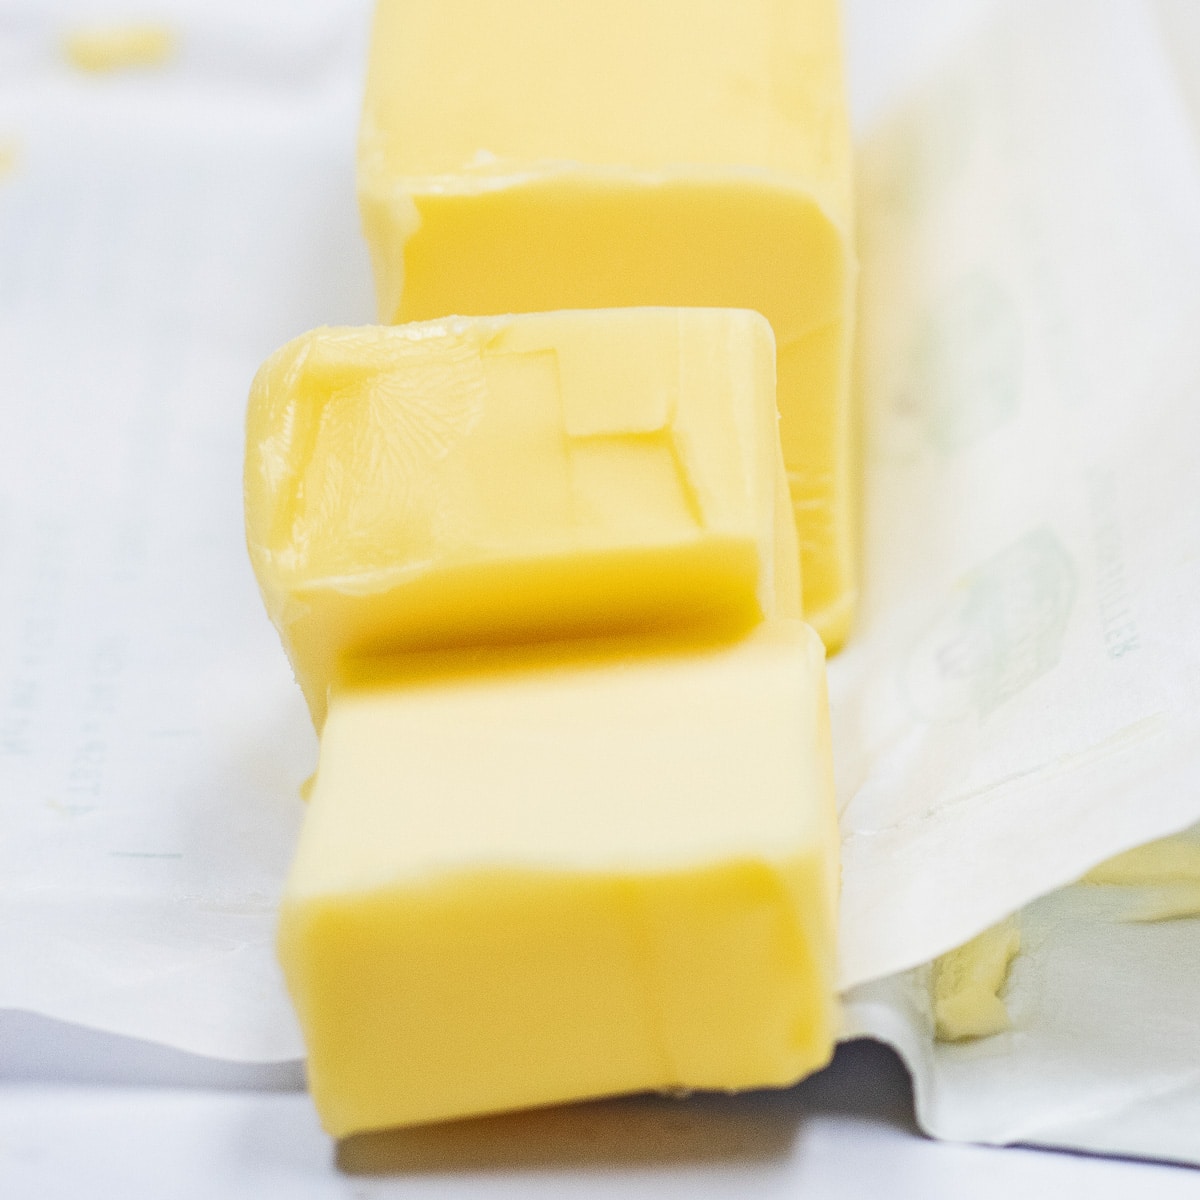 Las mejores opciones de sustitutos de mantequilla para reemplazar la mantequilla europea en rodajas que se muestra aquí.